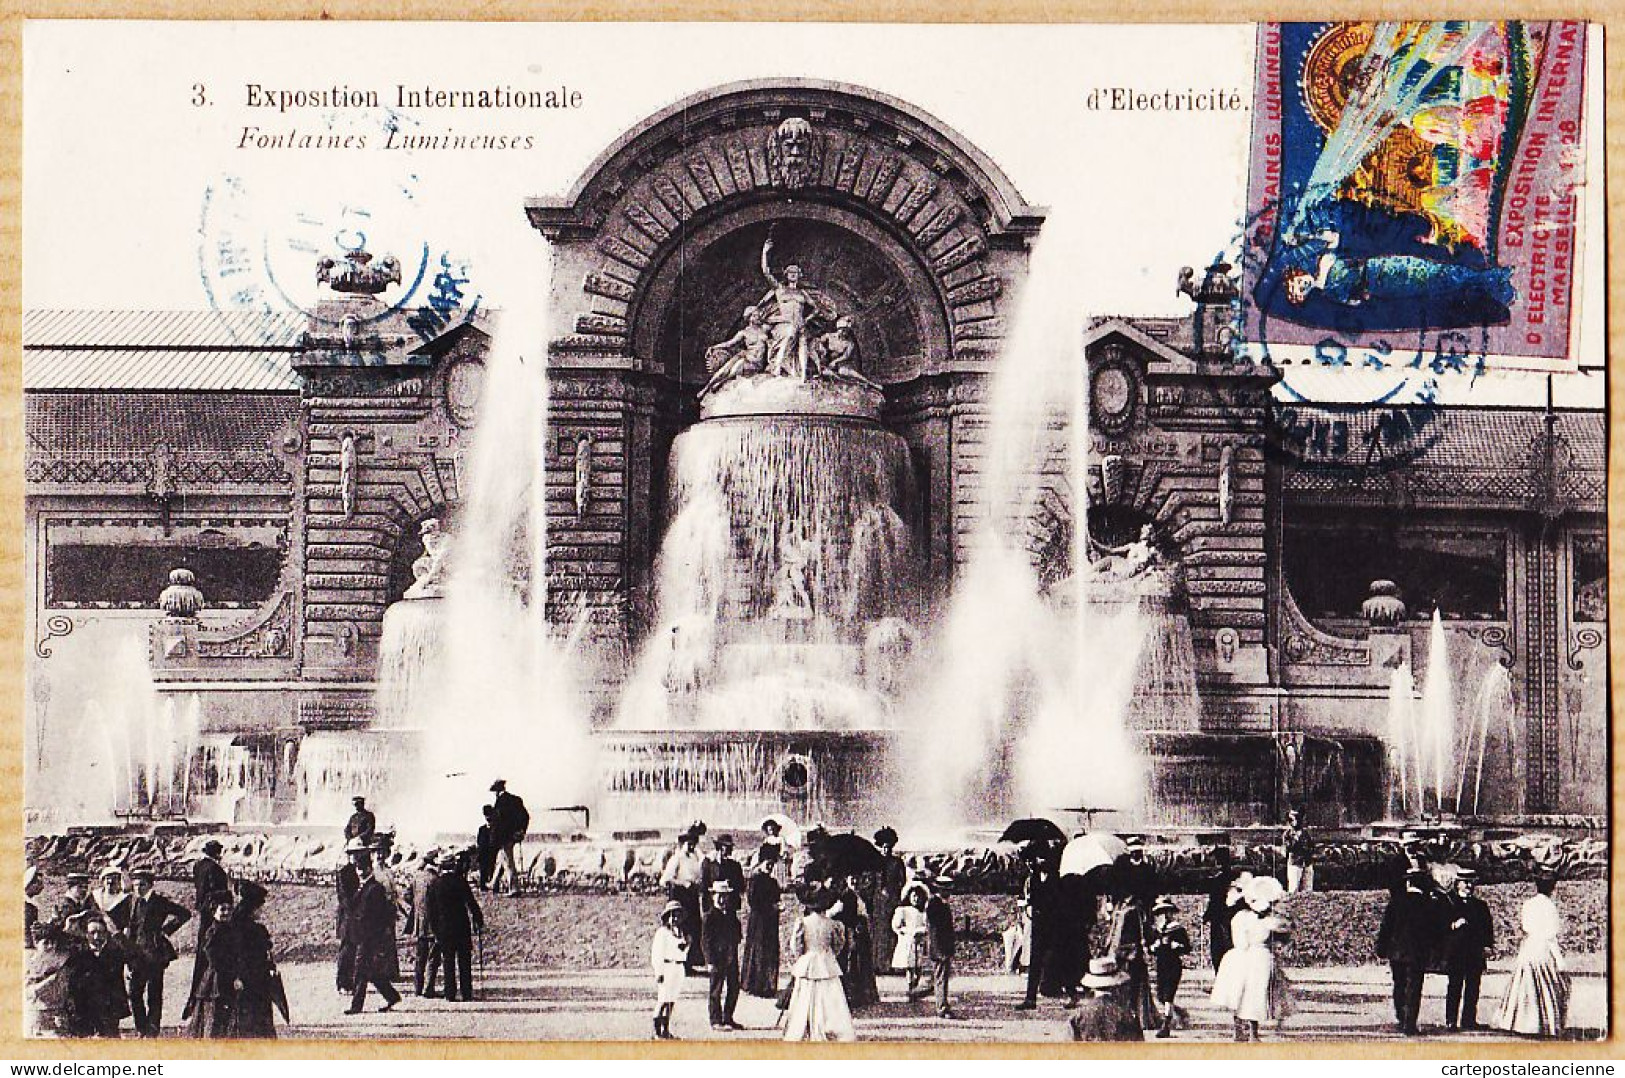 35032 / MARSEILLE Fontaines Lumineuses Exposition Internationale Electricité 1908 Vignette Expo-Photo BAUDOUIN-VINCENT  - Weltausstellung Elektrizität 1908 U.a.